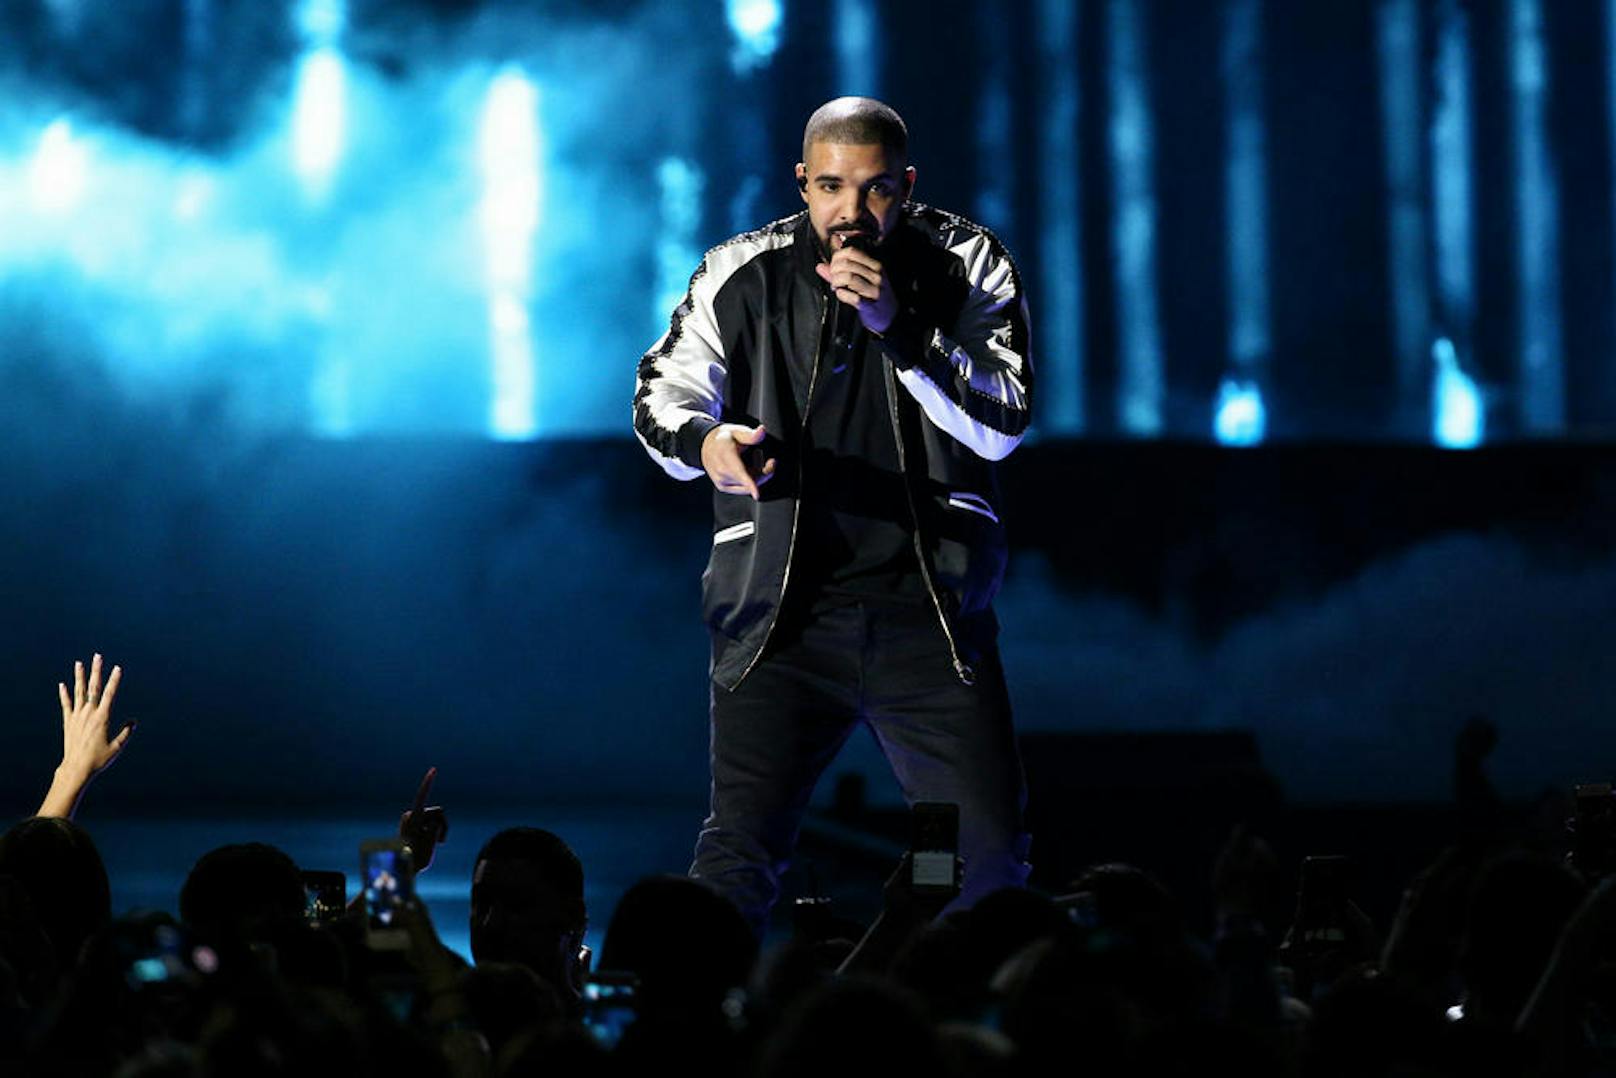 <b>154</b>
Mit 154 Tracks hat Drake als Solo-Künstler die meisten Chart-Songs in der Geschichte der Billboard Hot 100 und schlägt damit...